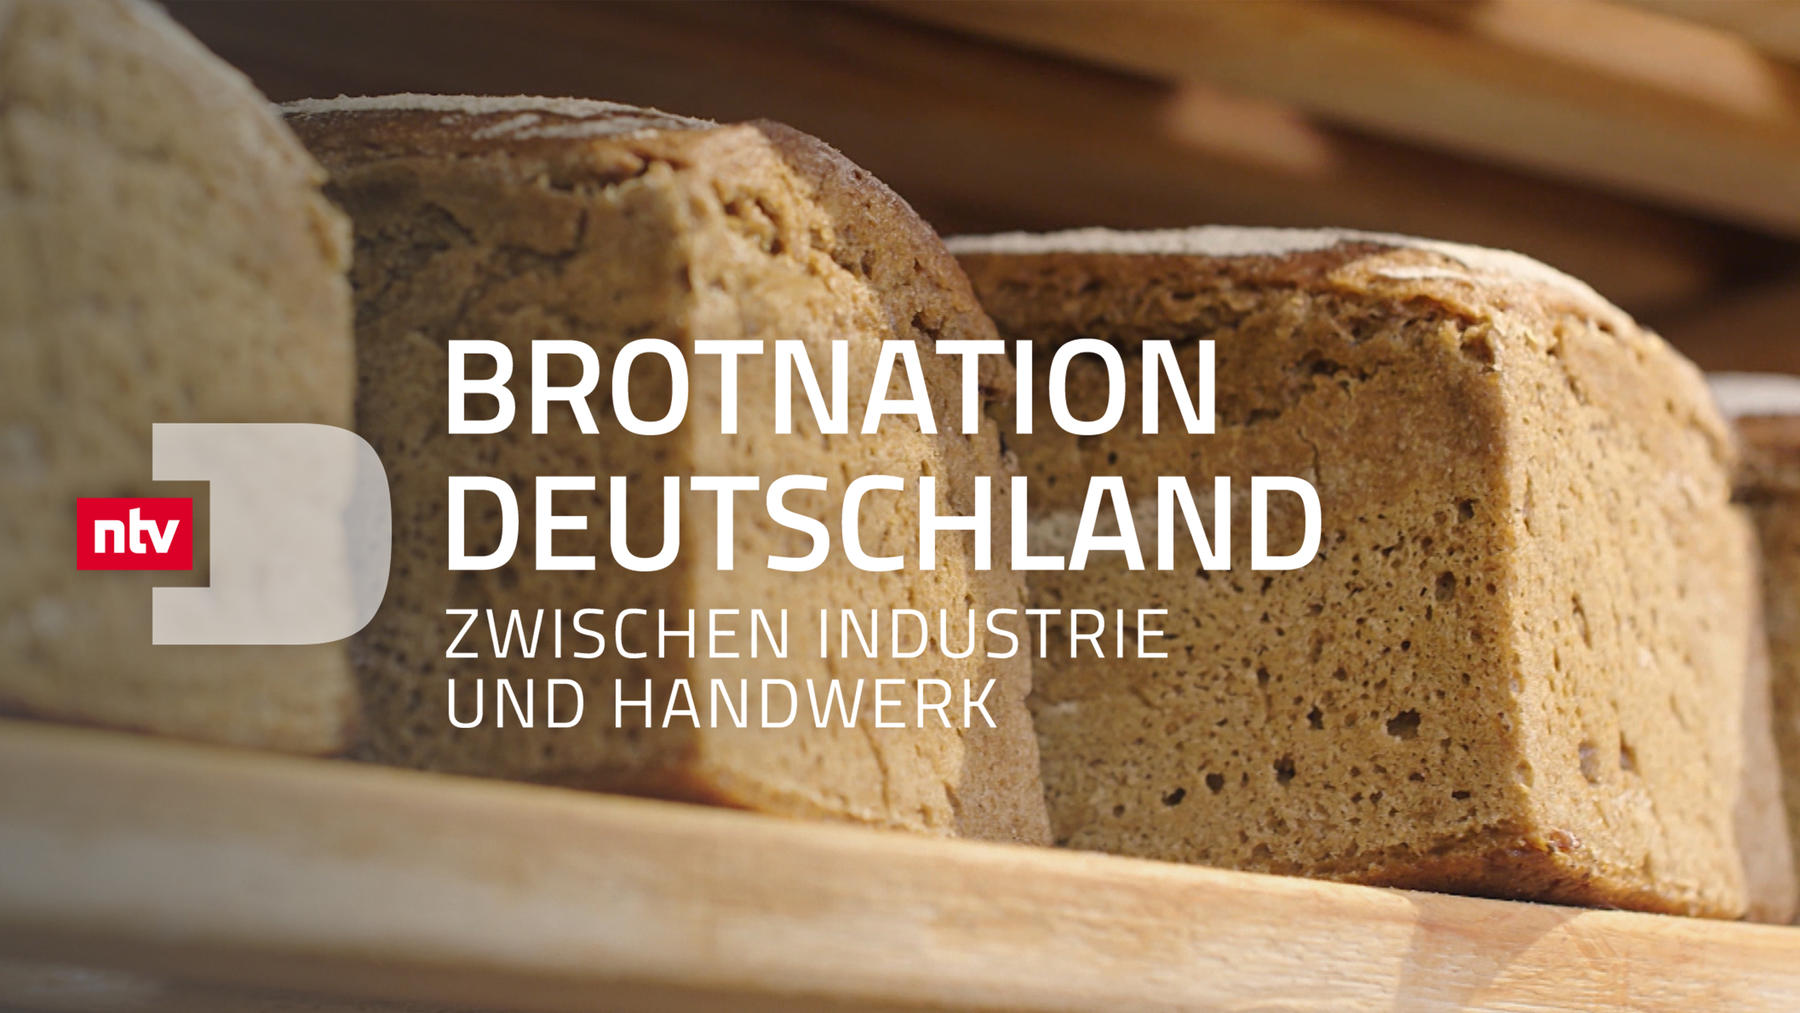 Brotnation Deutschland - Zwischen Industrie und Handwerk